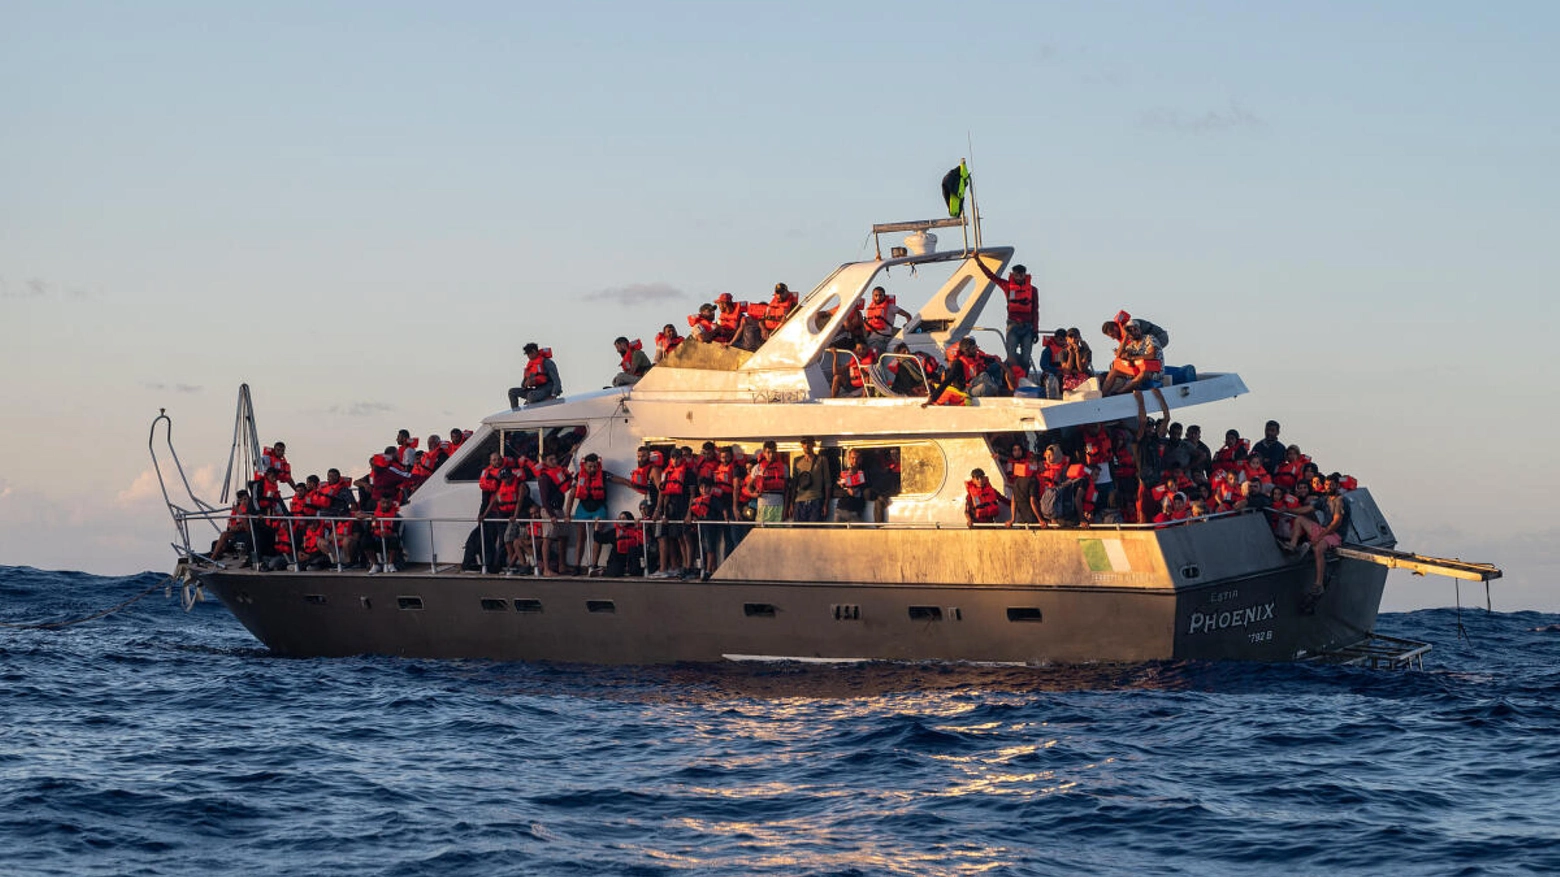 Immigrazione: nave Humanity 1 salva 207 immigrati nel Mar Mediterraneo